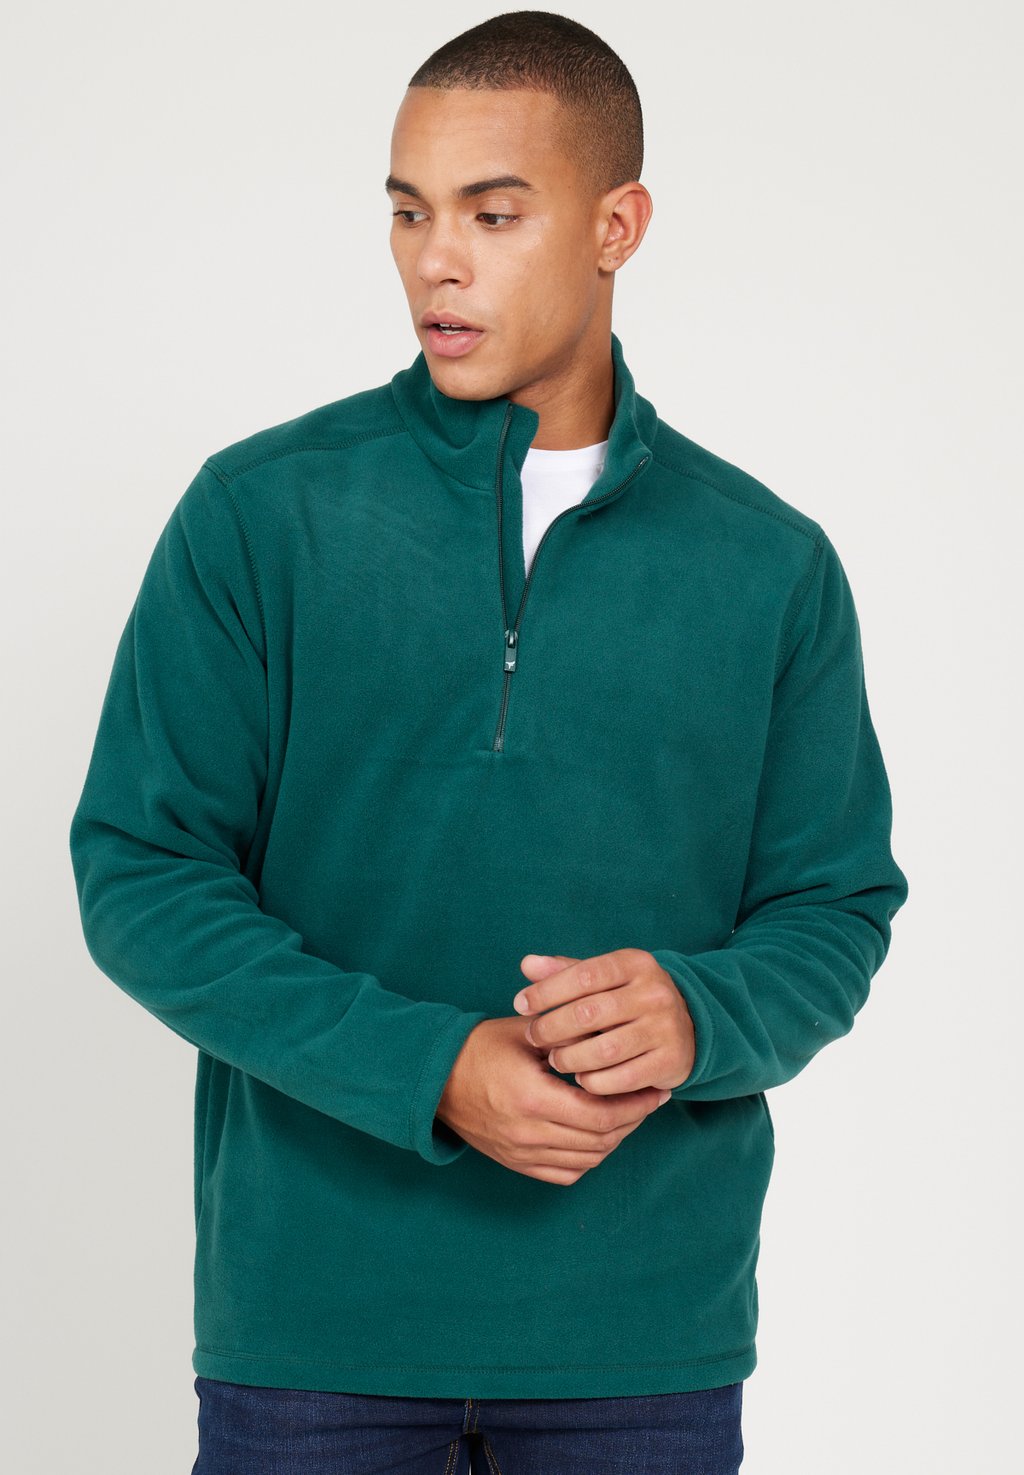 Флисовый пуловер STANDARD FIT AC&CO / ALTINYILDIZ CLASSICS, цвет Standard Fit Fleece Sweatshirt футболка с принтом standard fit ac